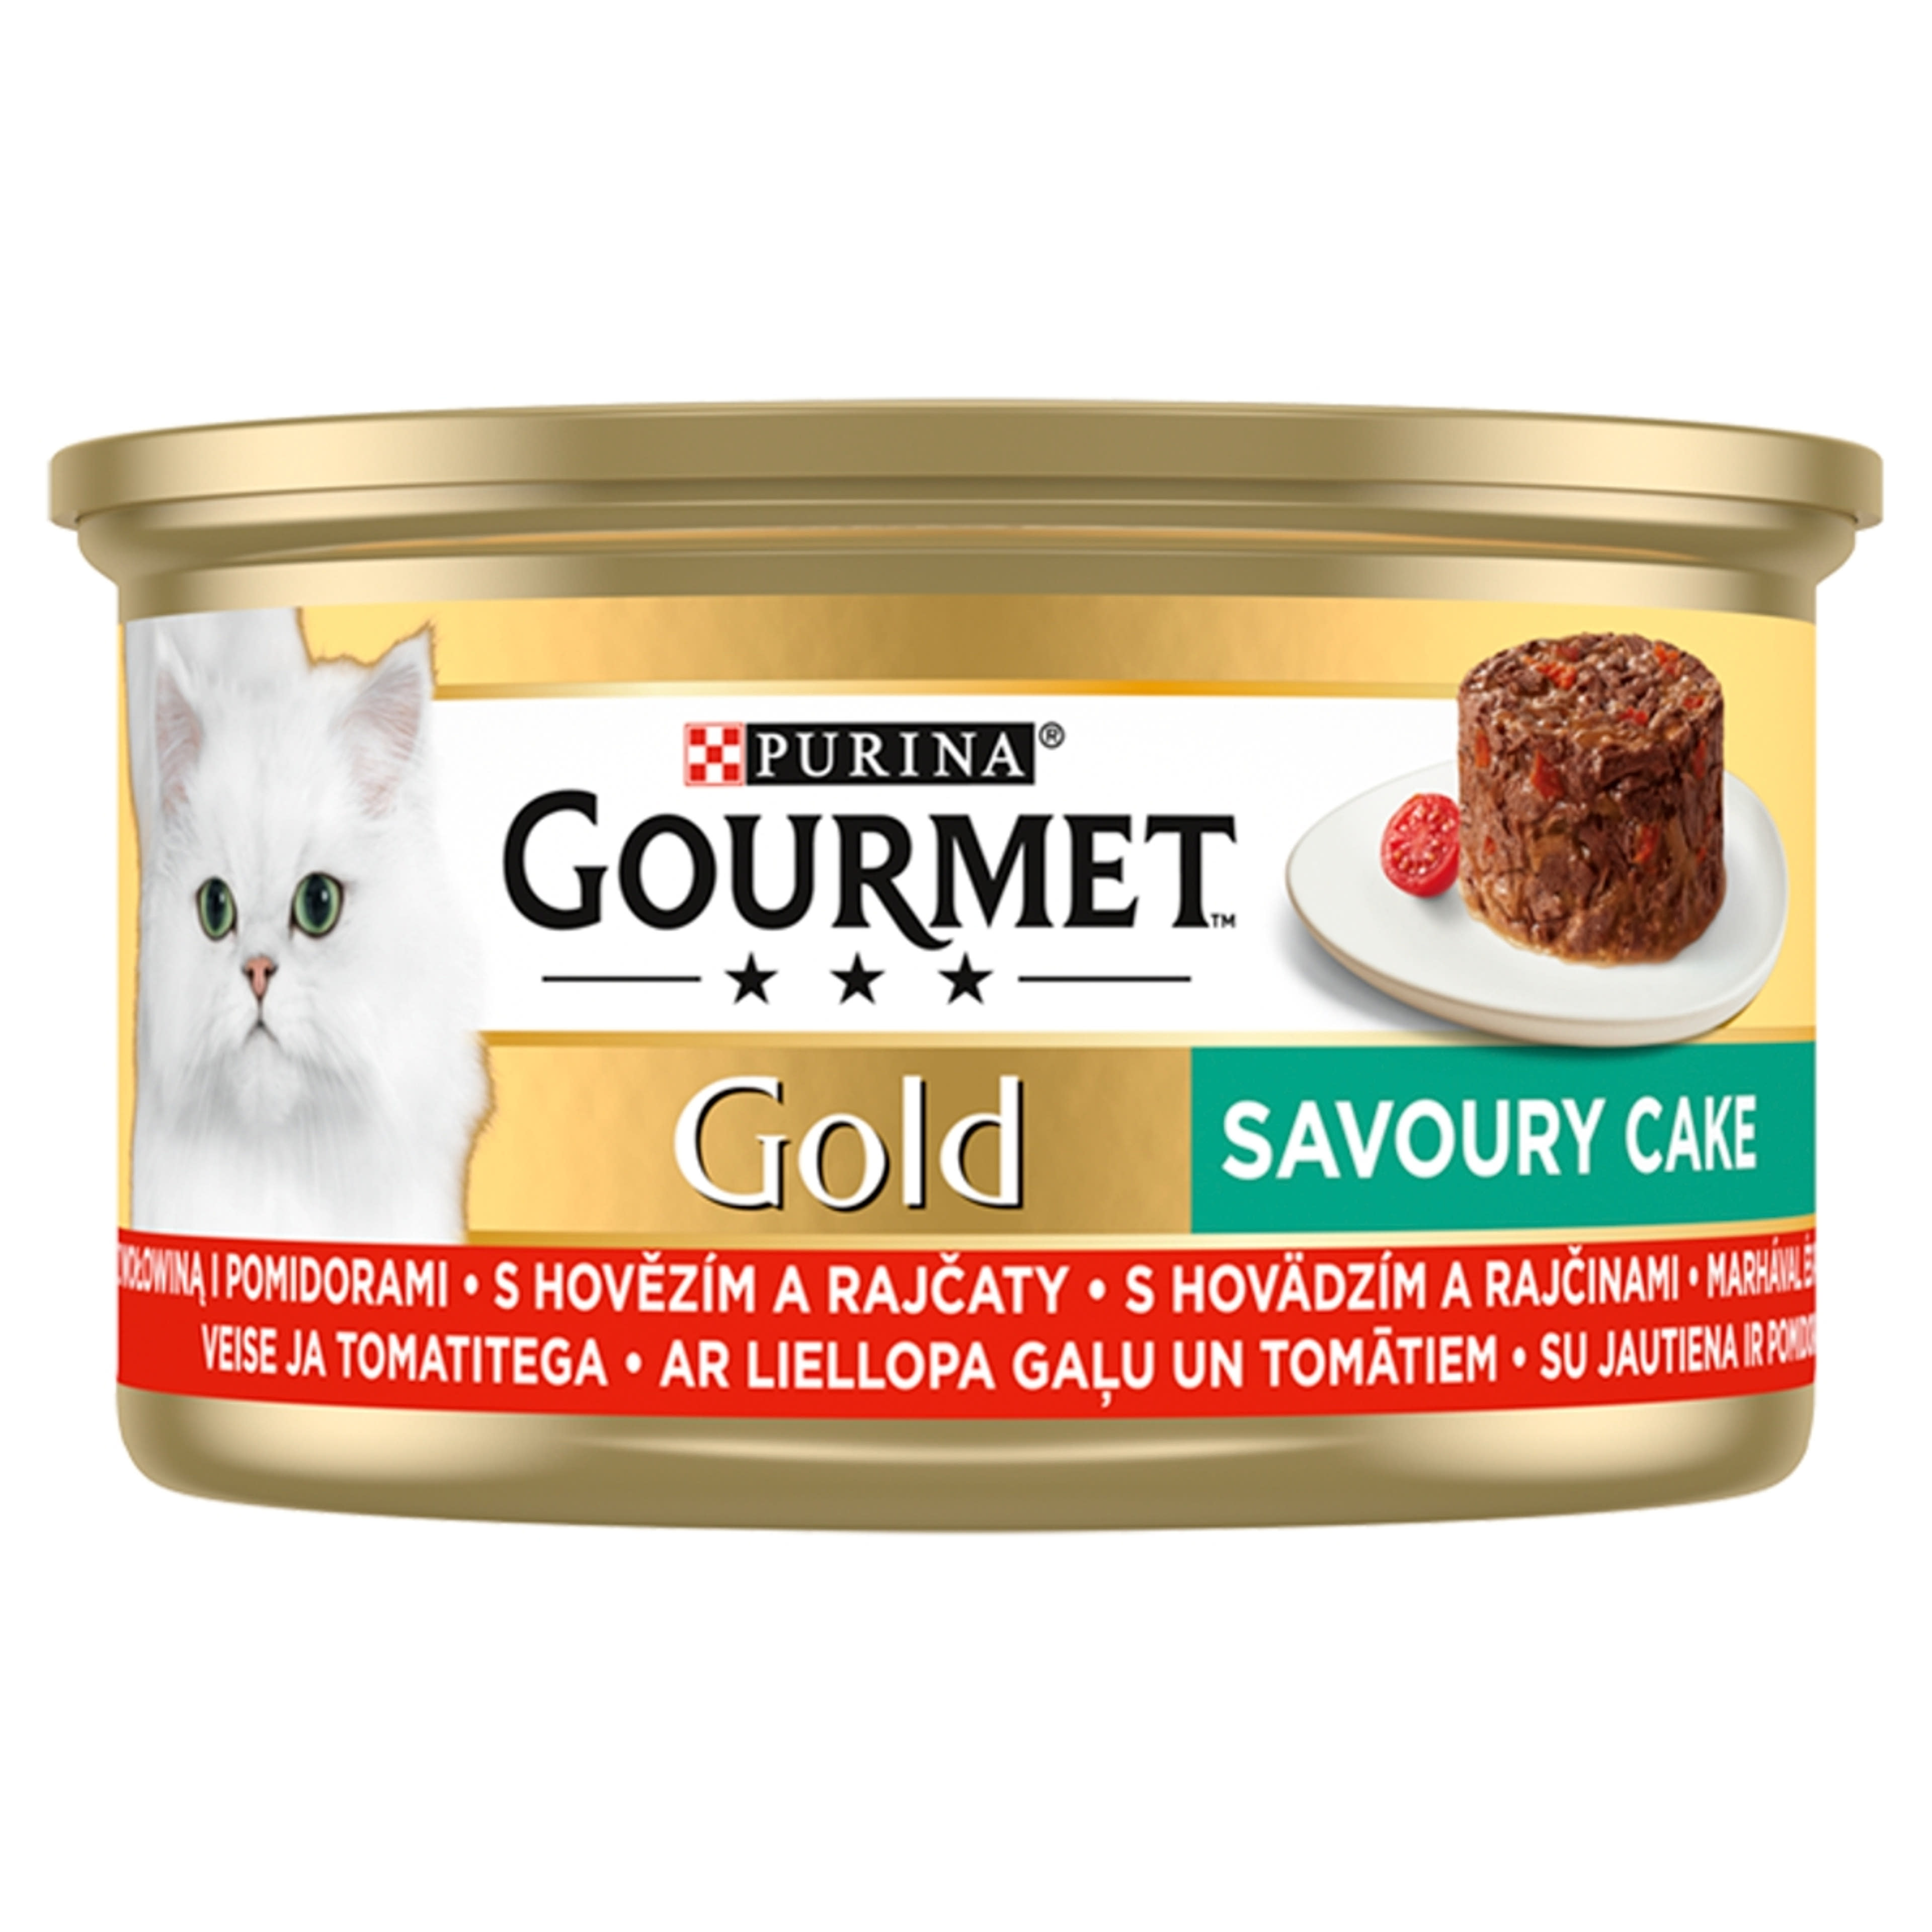 Gourmet Gold felnőtt teljes értékű konzerv macskáknak, marhahússal és paradicsommal - 85 g